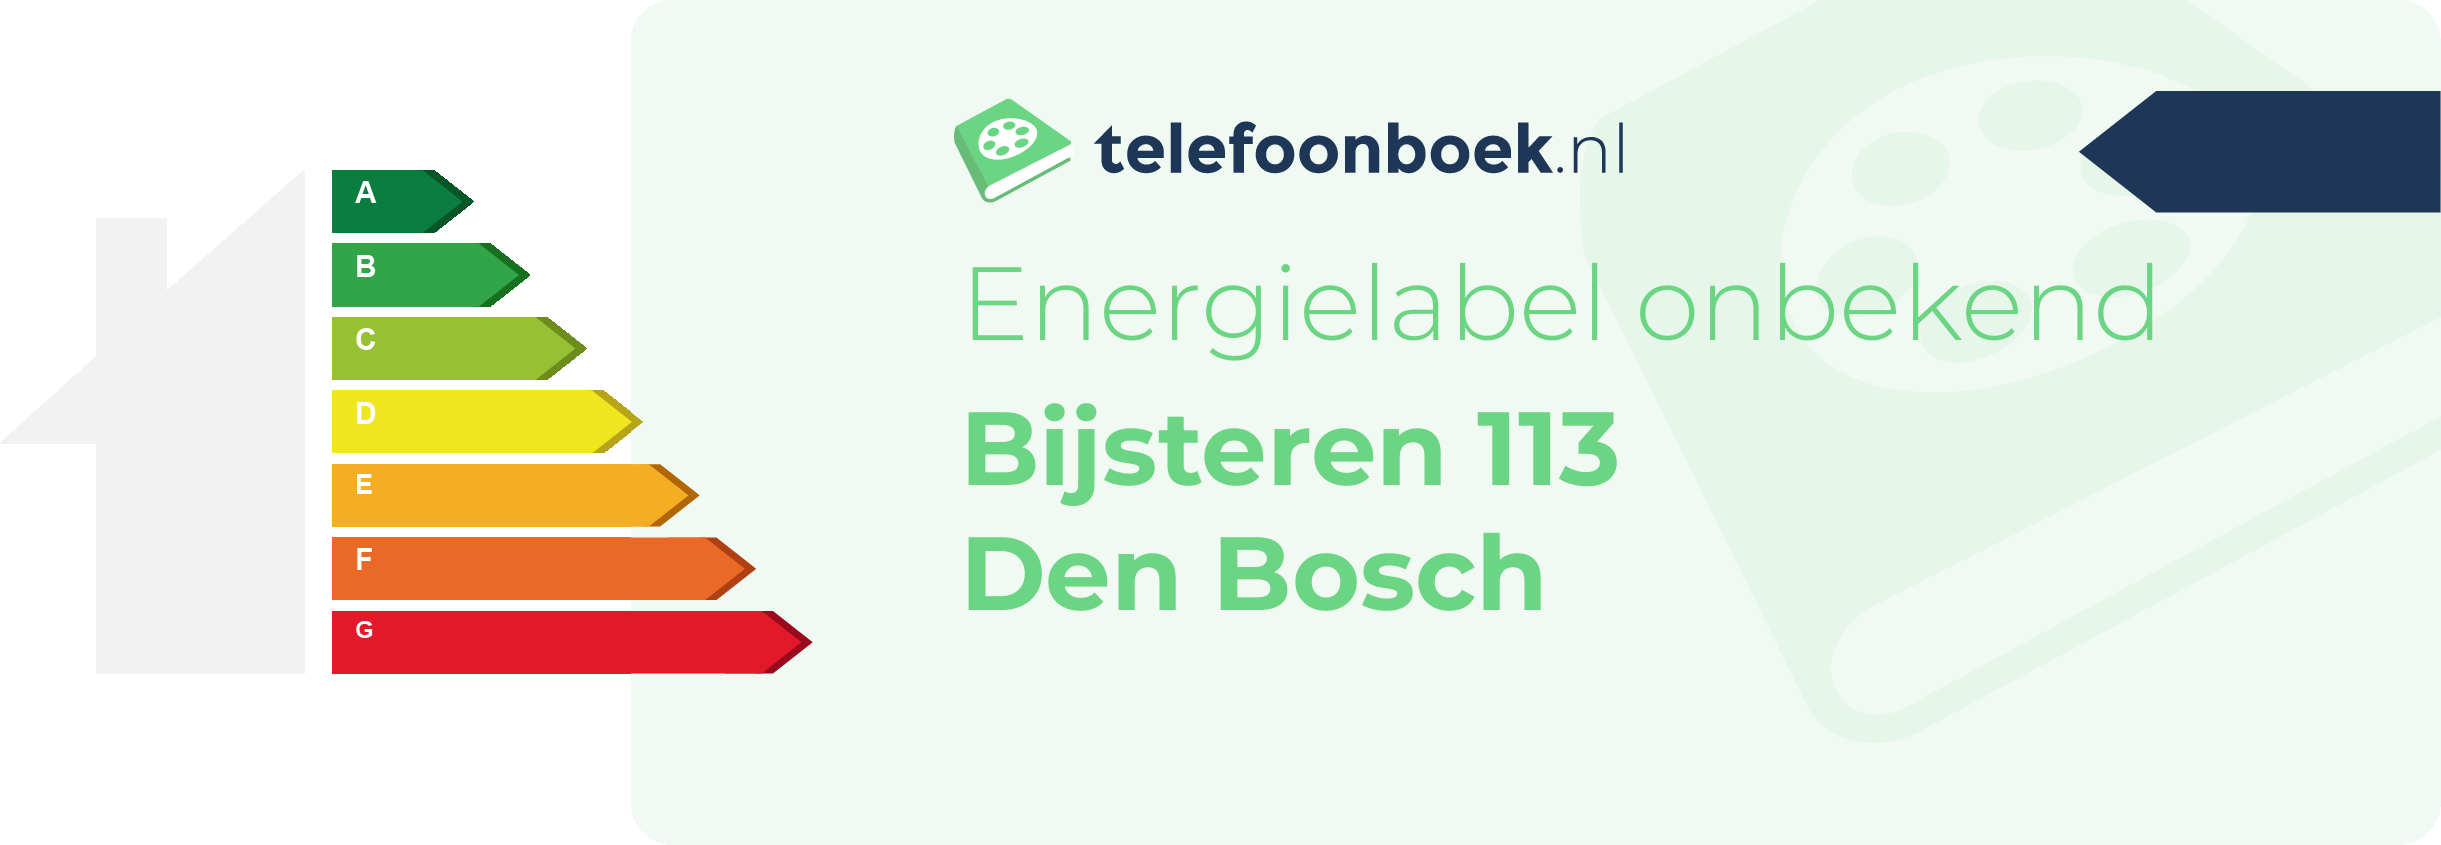 Energielabel Bijsteren 113 Den Bosch